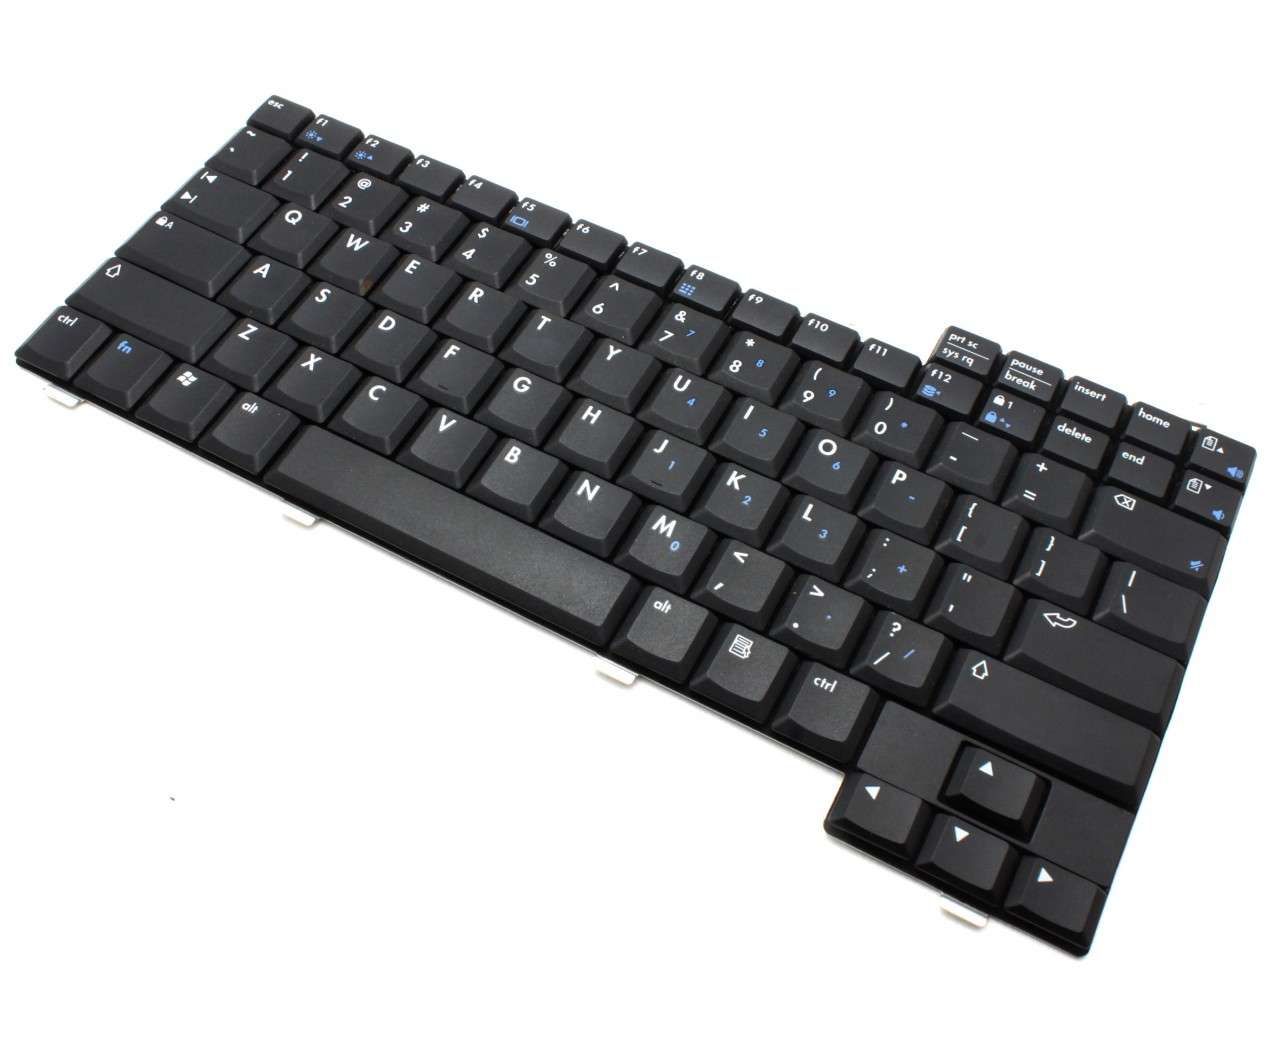 Tastatura HP Compaq Presario 2540EA